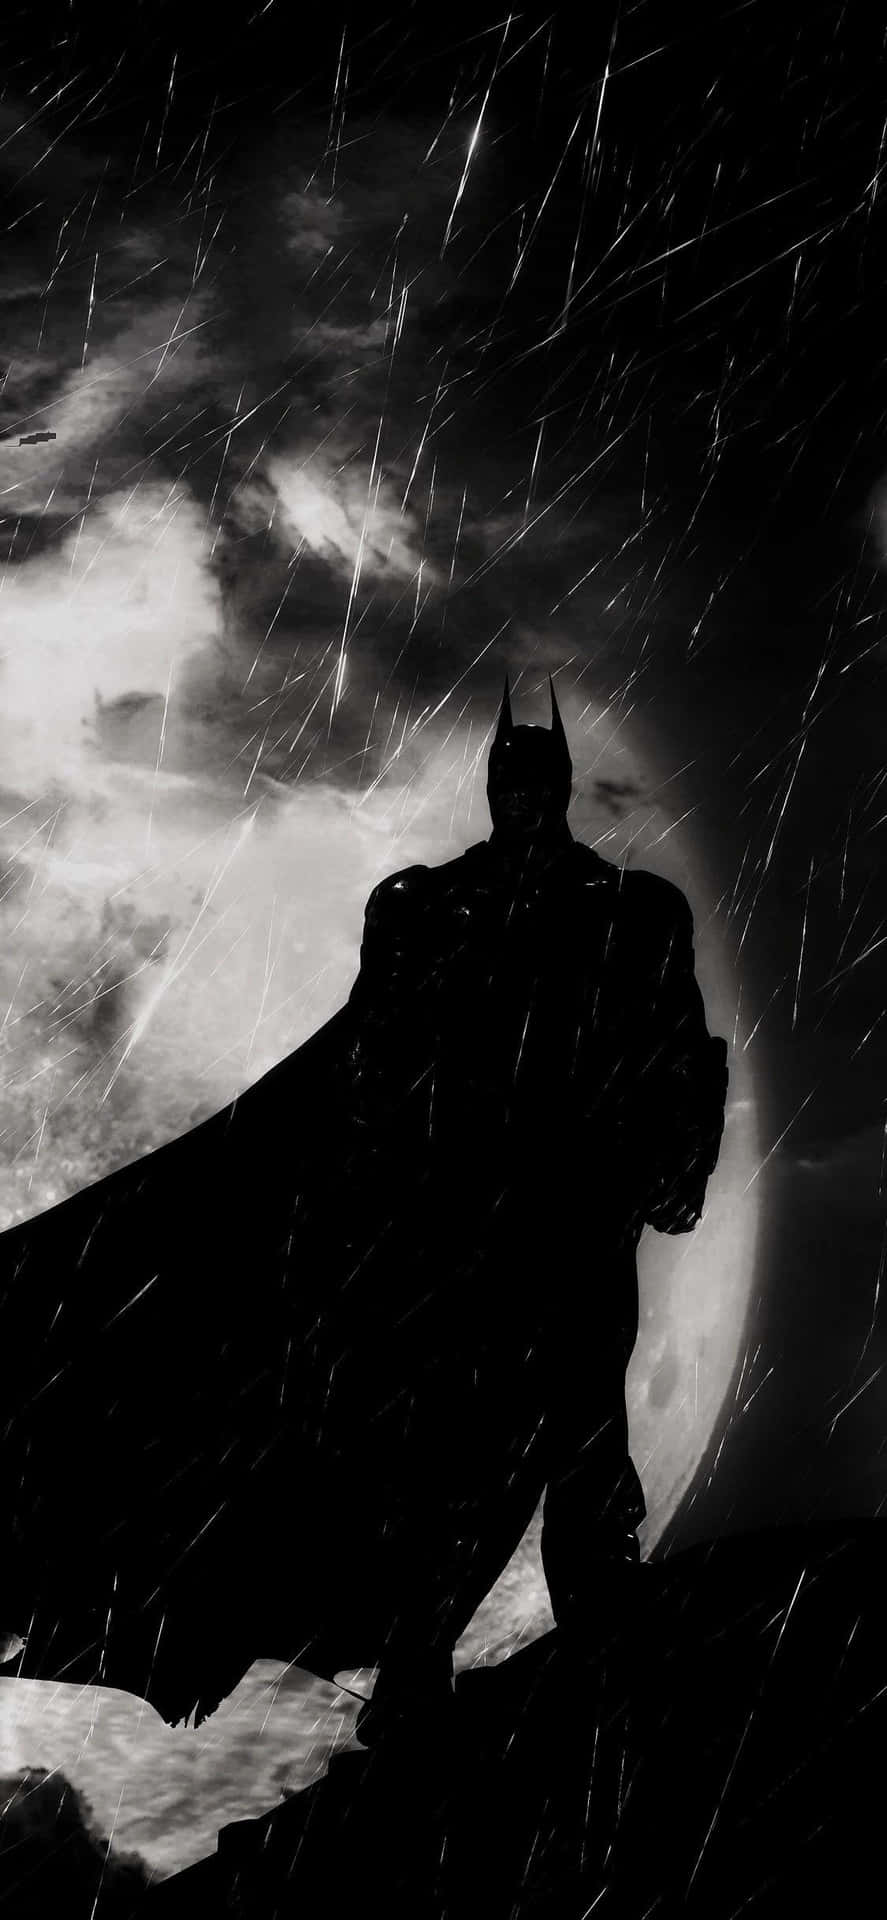 Consigueeste Impresionante Wallpaper De Batman Para Tu Iphone. Fondo de pantalla